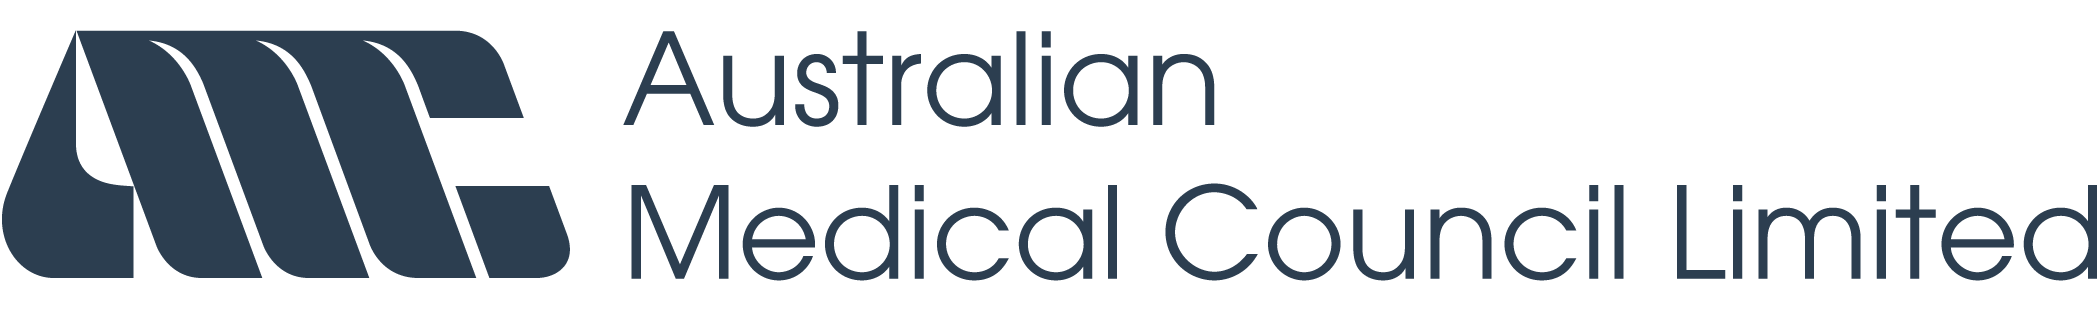 Australian Medical Council logo